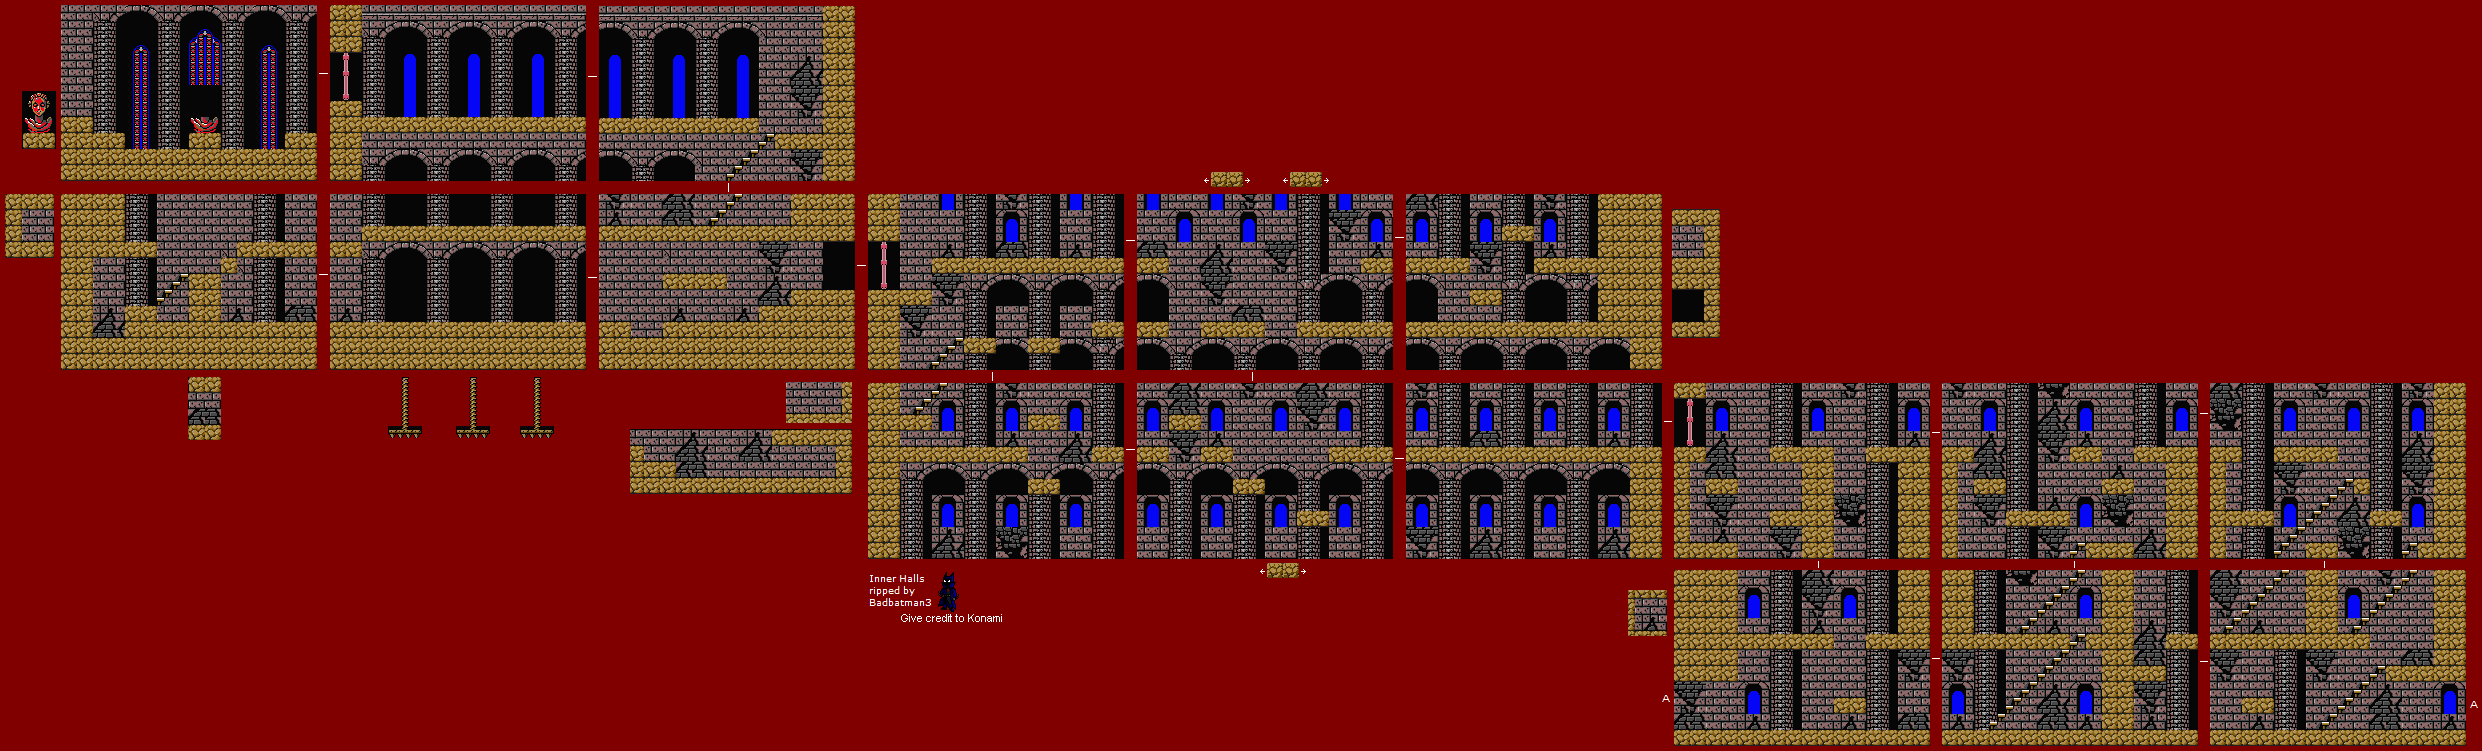 Vampire Killer (MSX2) - Stage 2: Inner Halls